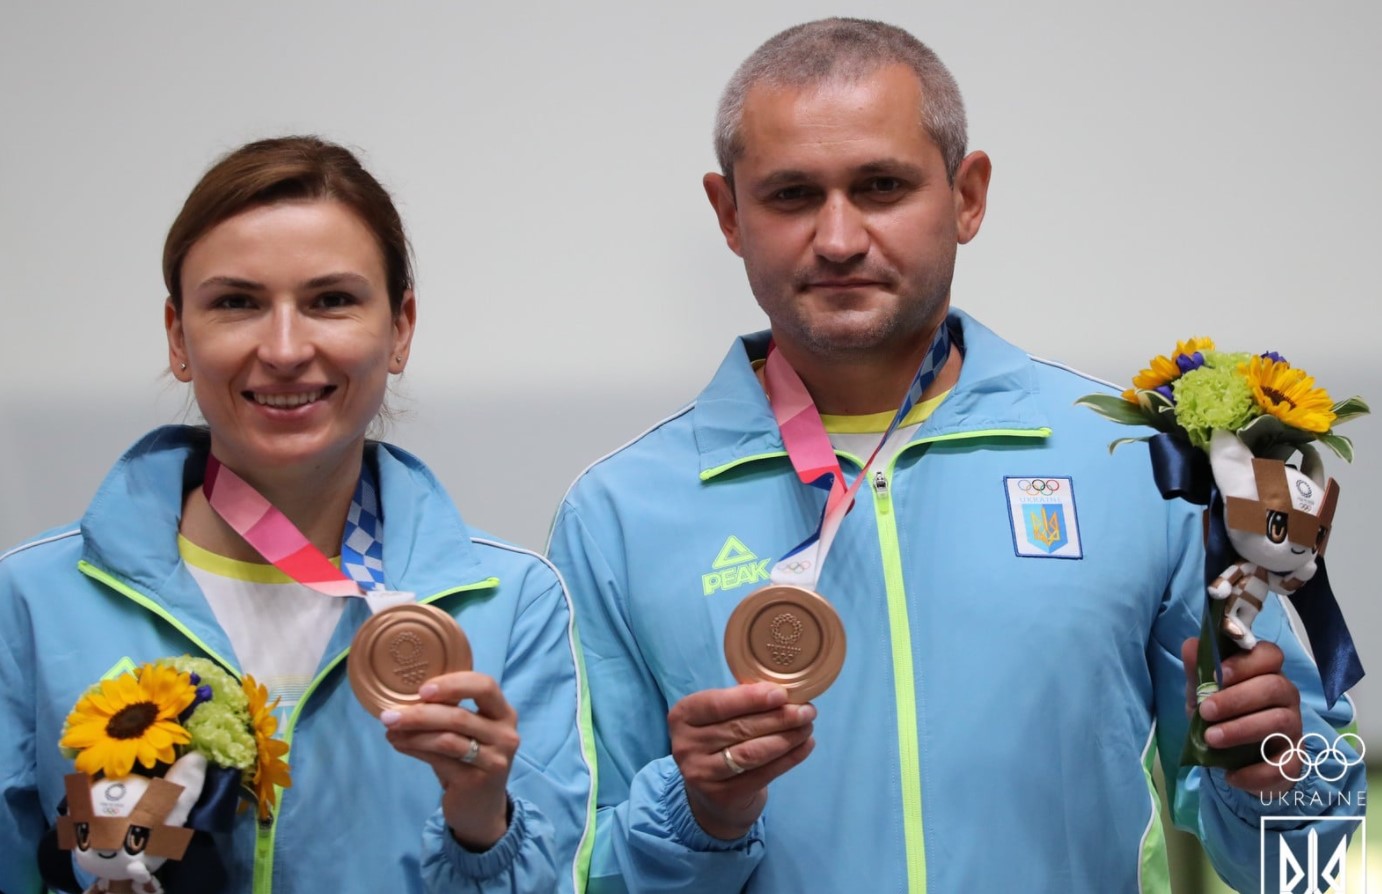 Олимпиада-2020: стрелки Костевич и Омельчук принесли Украине третью медаль (фото)